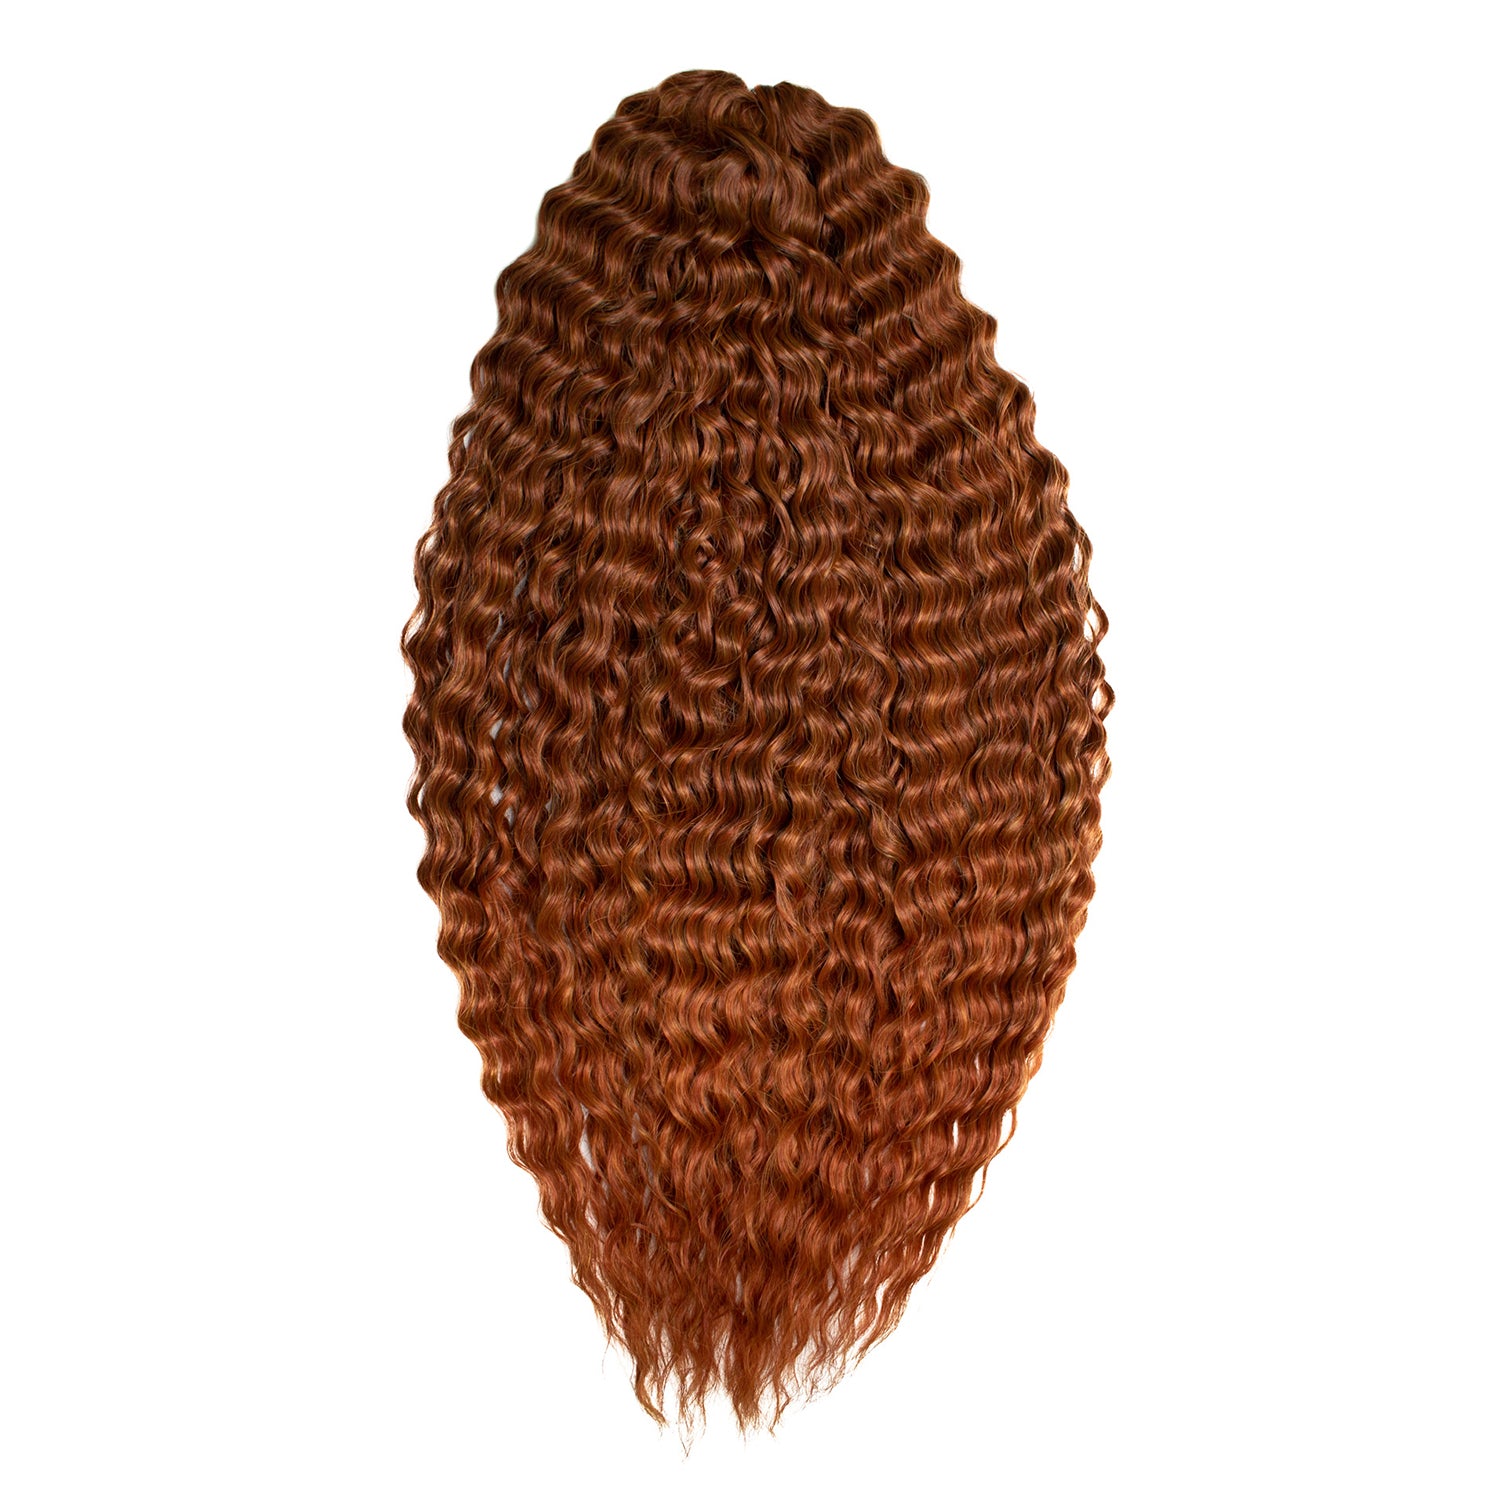 Афрокудри для плетения волос Ariel цвет T433 27 светлый каштан 55см вес 300г